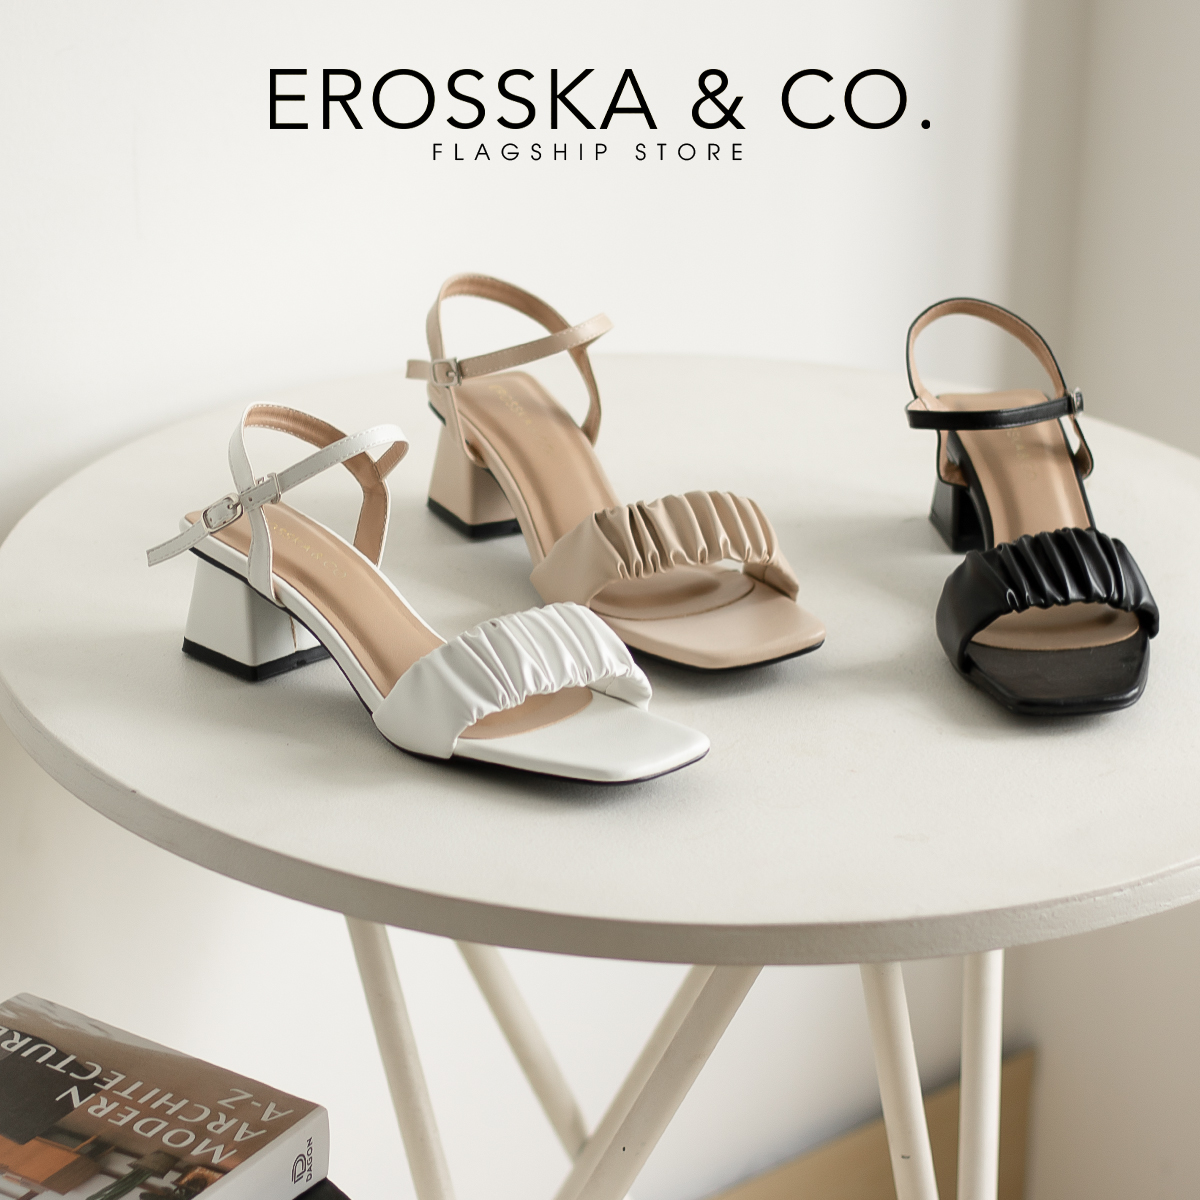 Erosska - Giày sandal cao gót nữ mũi vuông quai nhún cao 4cm - EB051